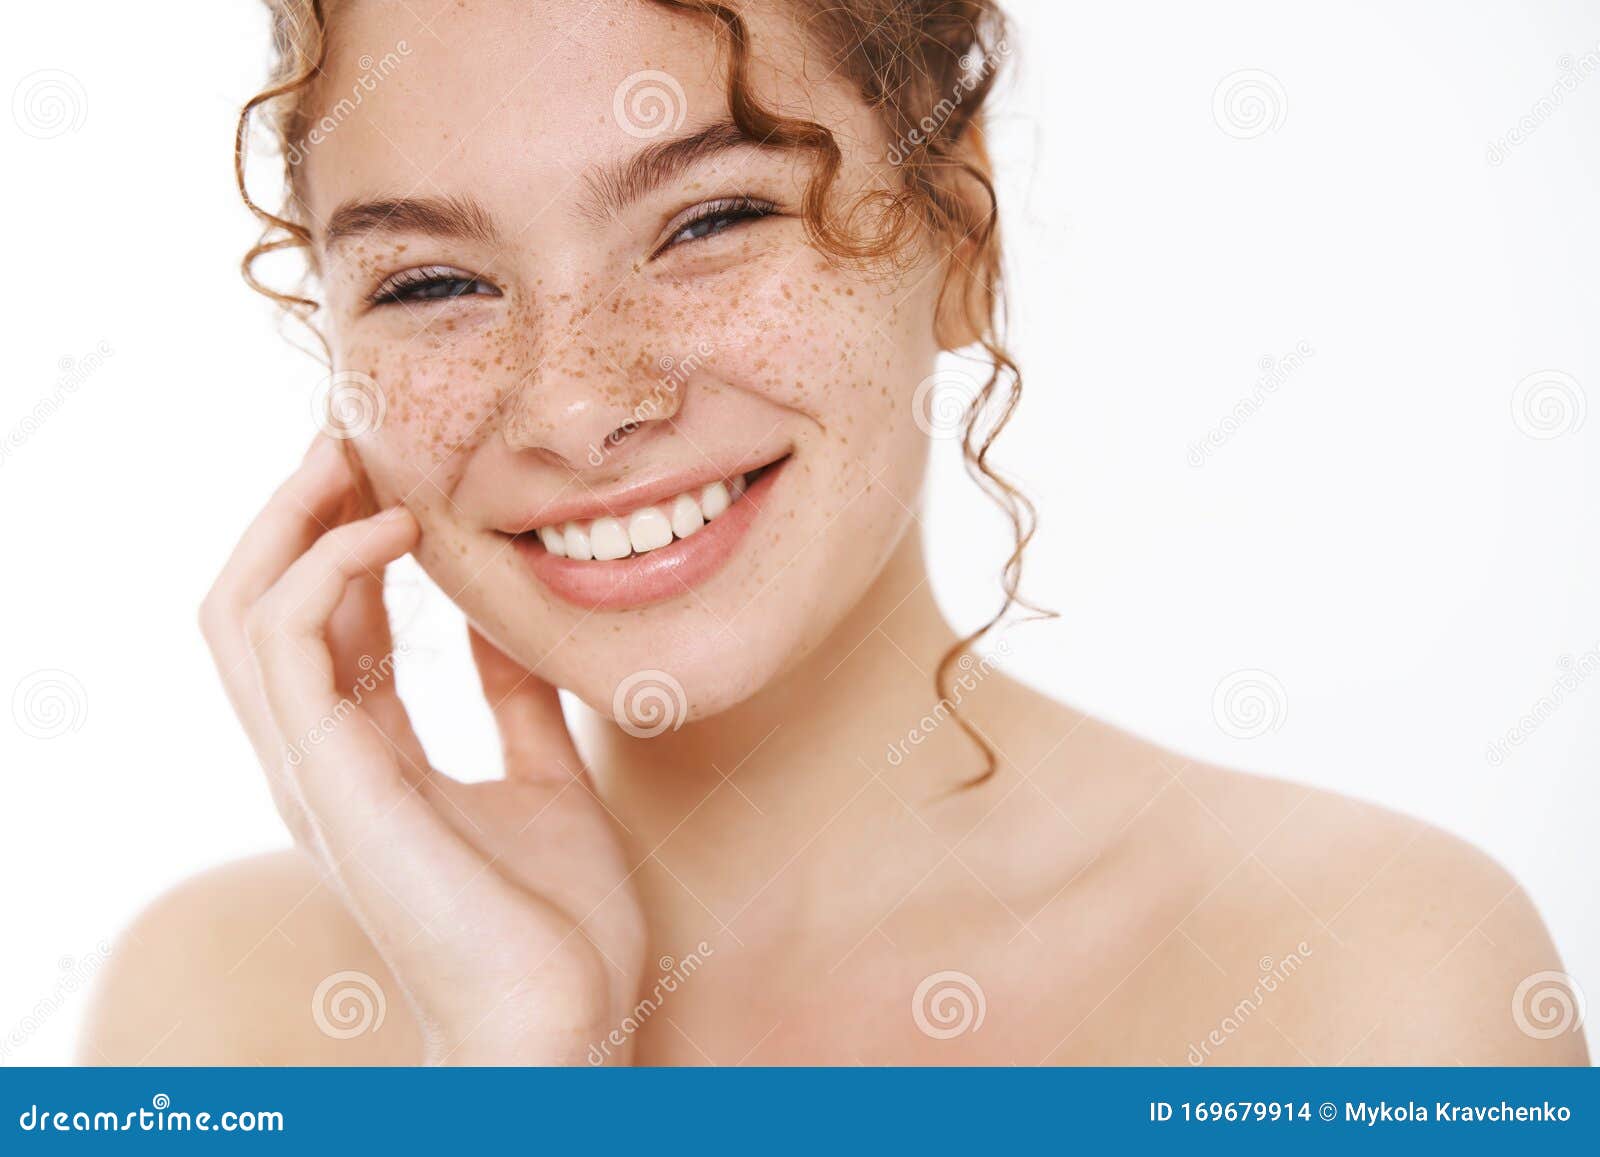 Nude Teen Freckles